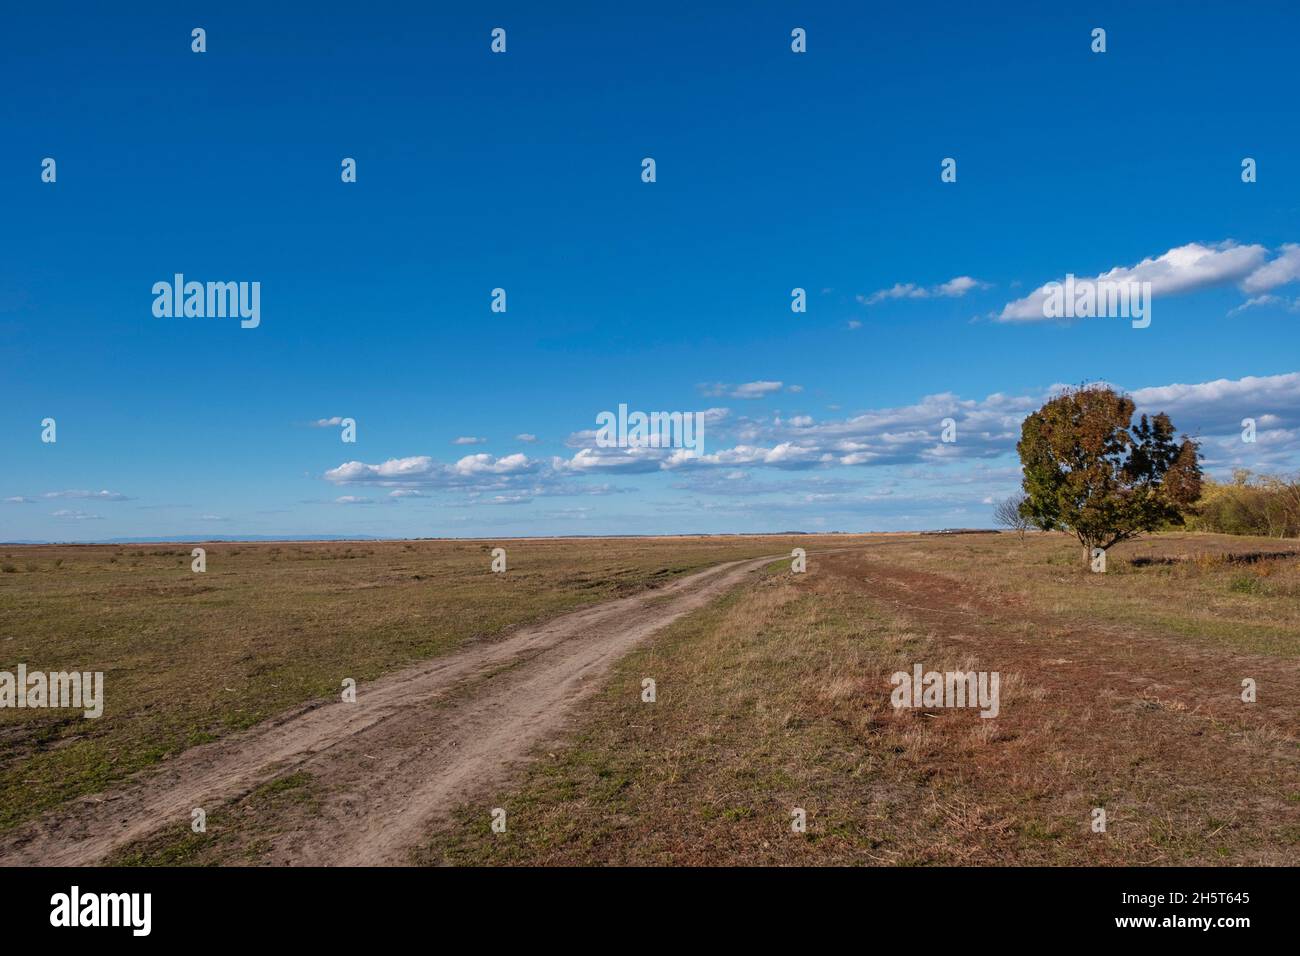 Un árbol solitario cerca de un camino en el puszta, Parque Nacional Hortobágy, Hungría Foto de stock